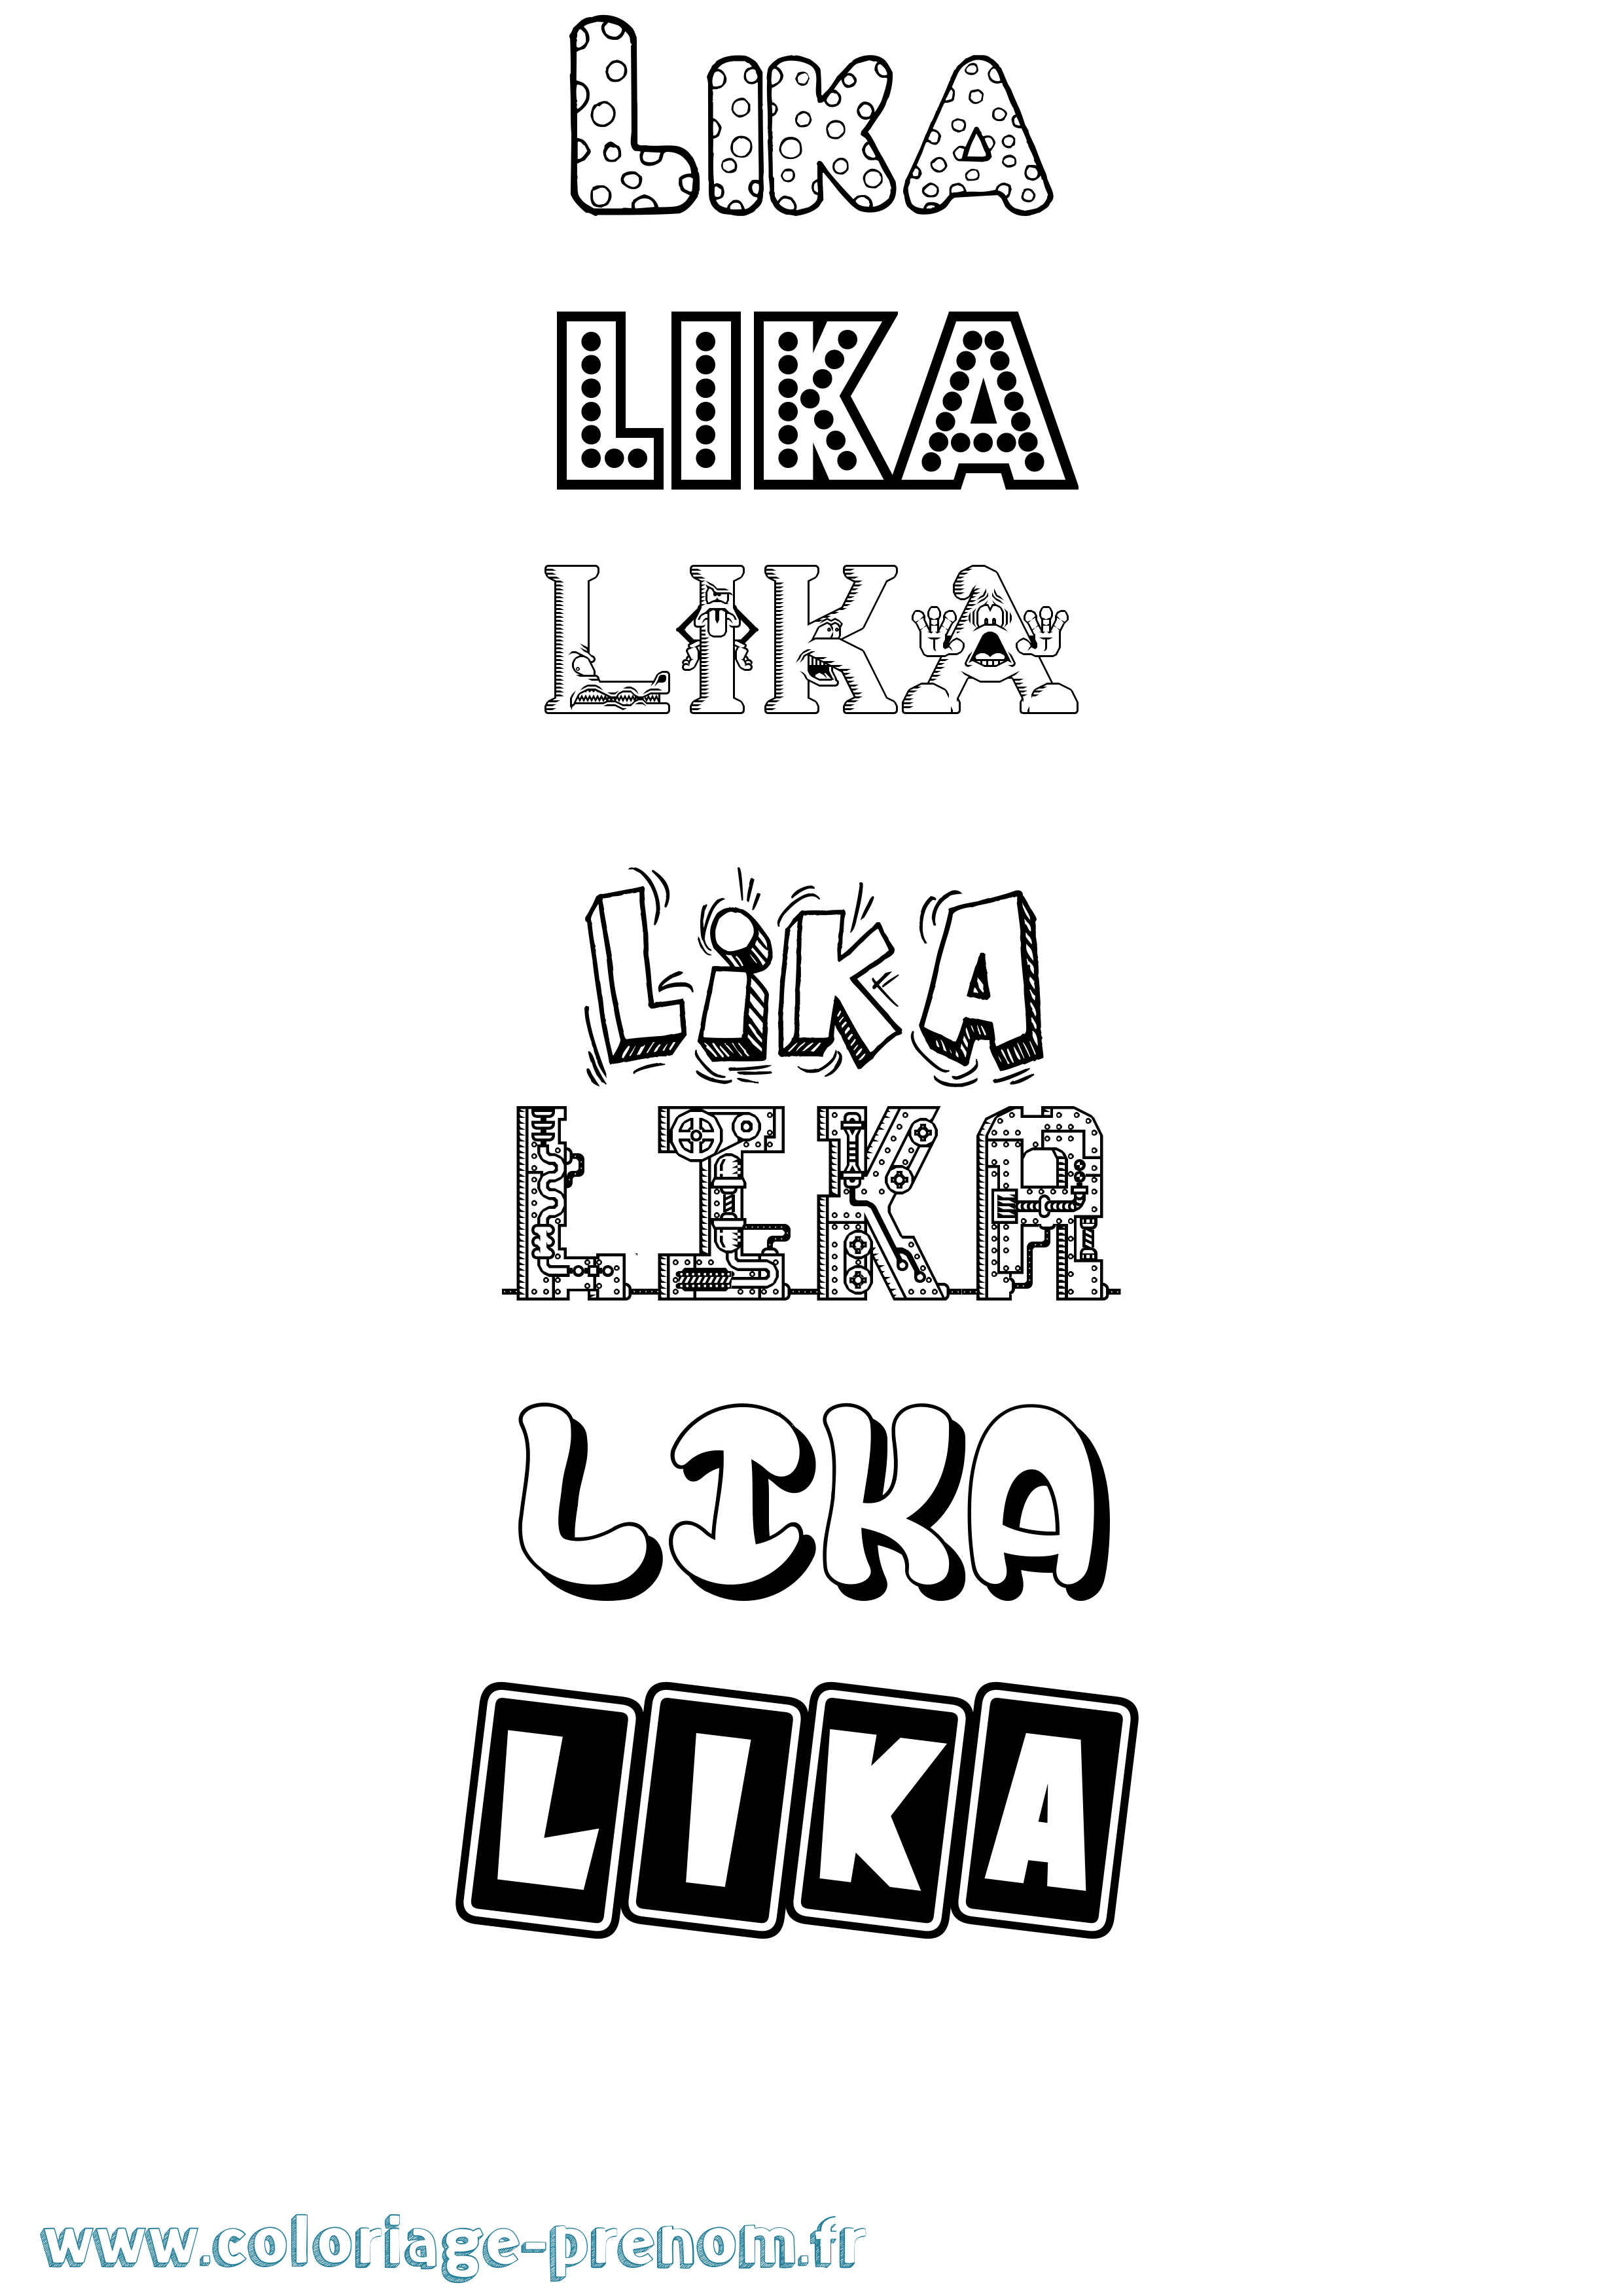 Coloriage prénom Lika Fun